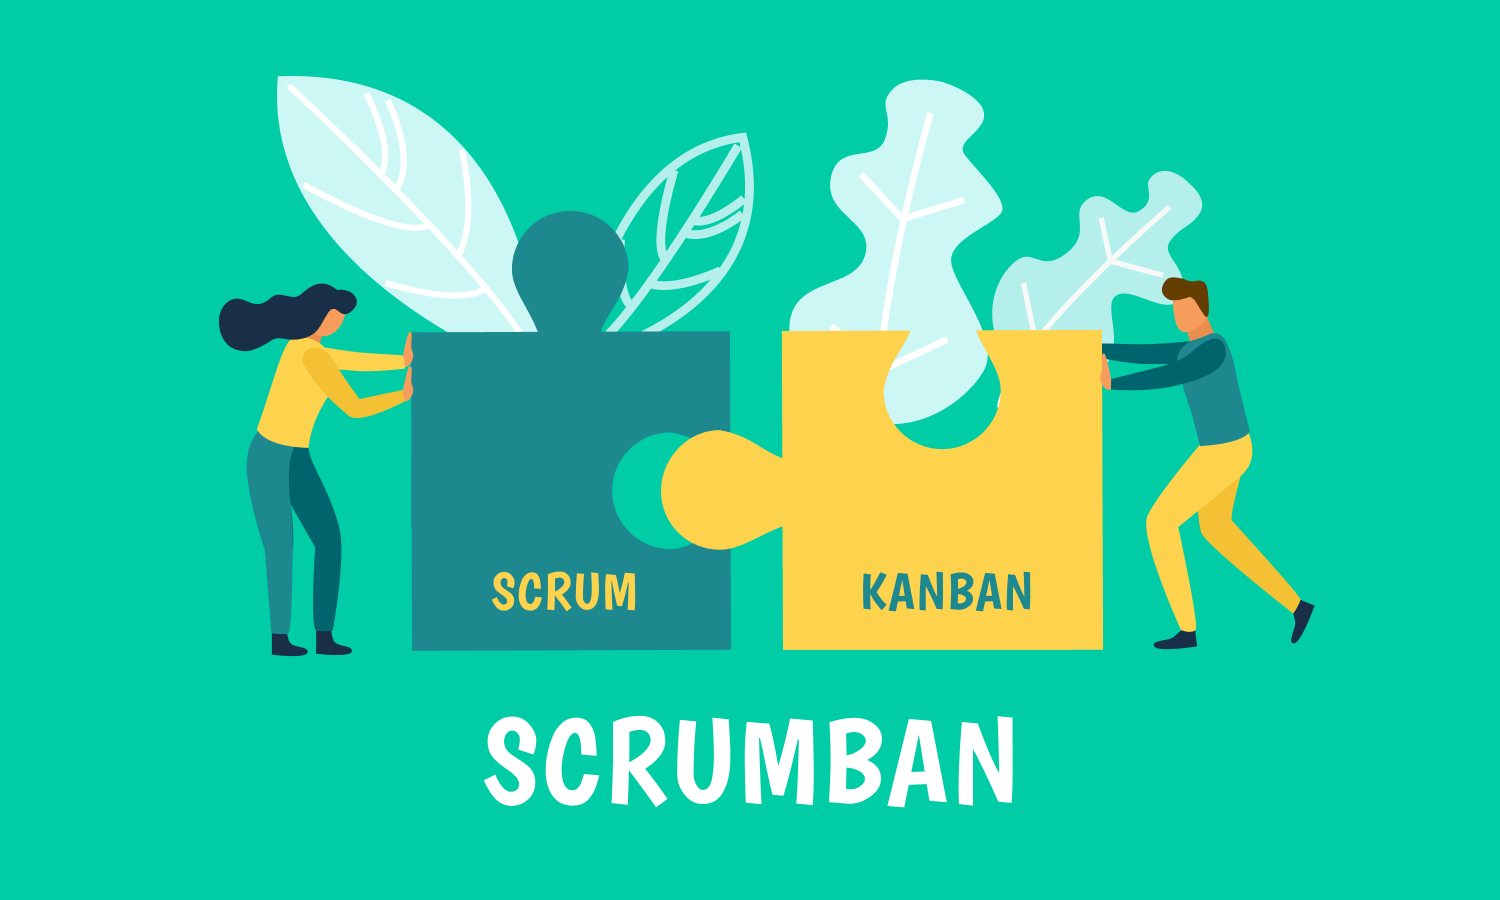 Scrum and Kanban